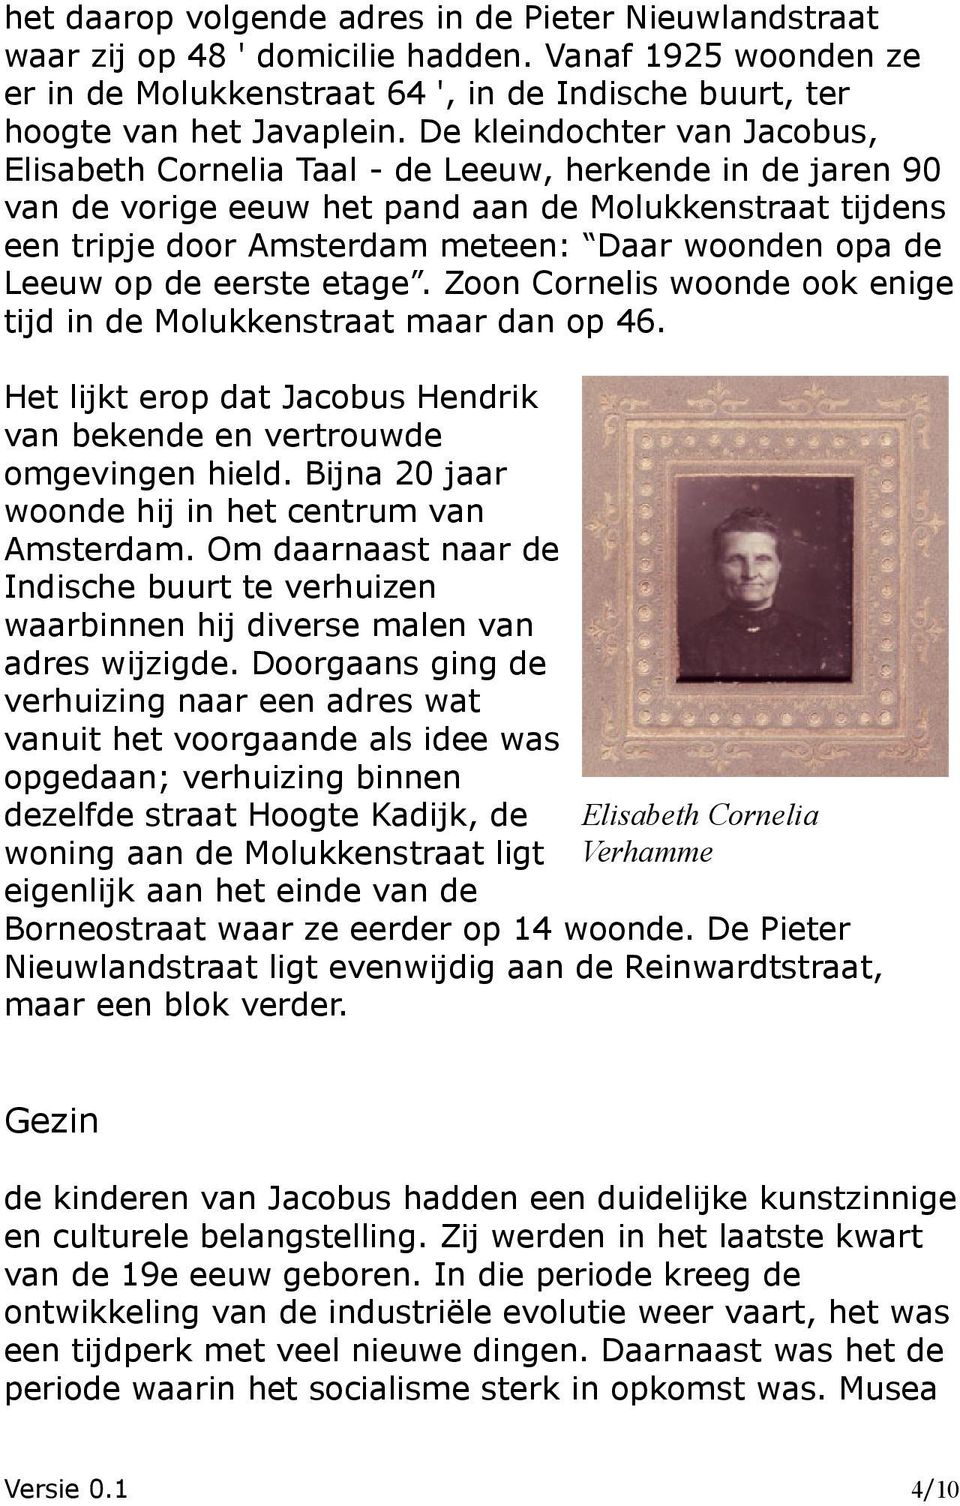 de Leeuw op de eerste etage. Zoon Cornelis woonde ook enige tijd in de Molukkenstraat maar dan op 46. Het lijkt erop dat Jacobus Hendrik van bekende en vertrouwde omgevingen hield.